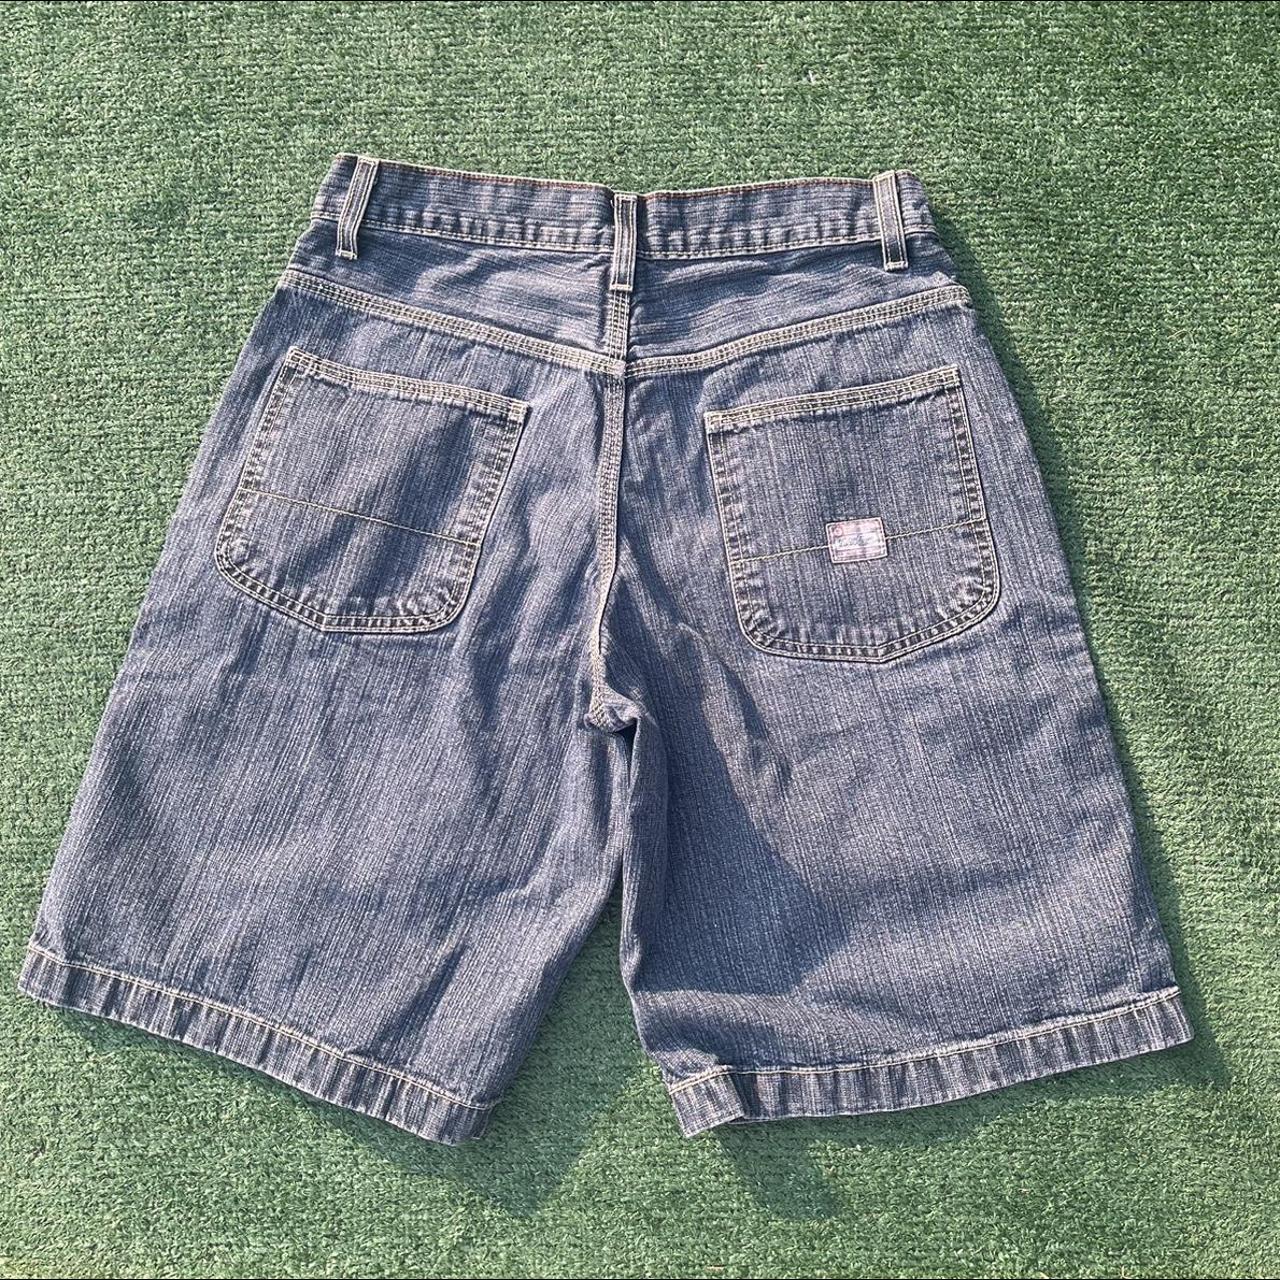 Vintage Blue Wash Levi Husky Jean Shorts Waist... - Depop